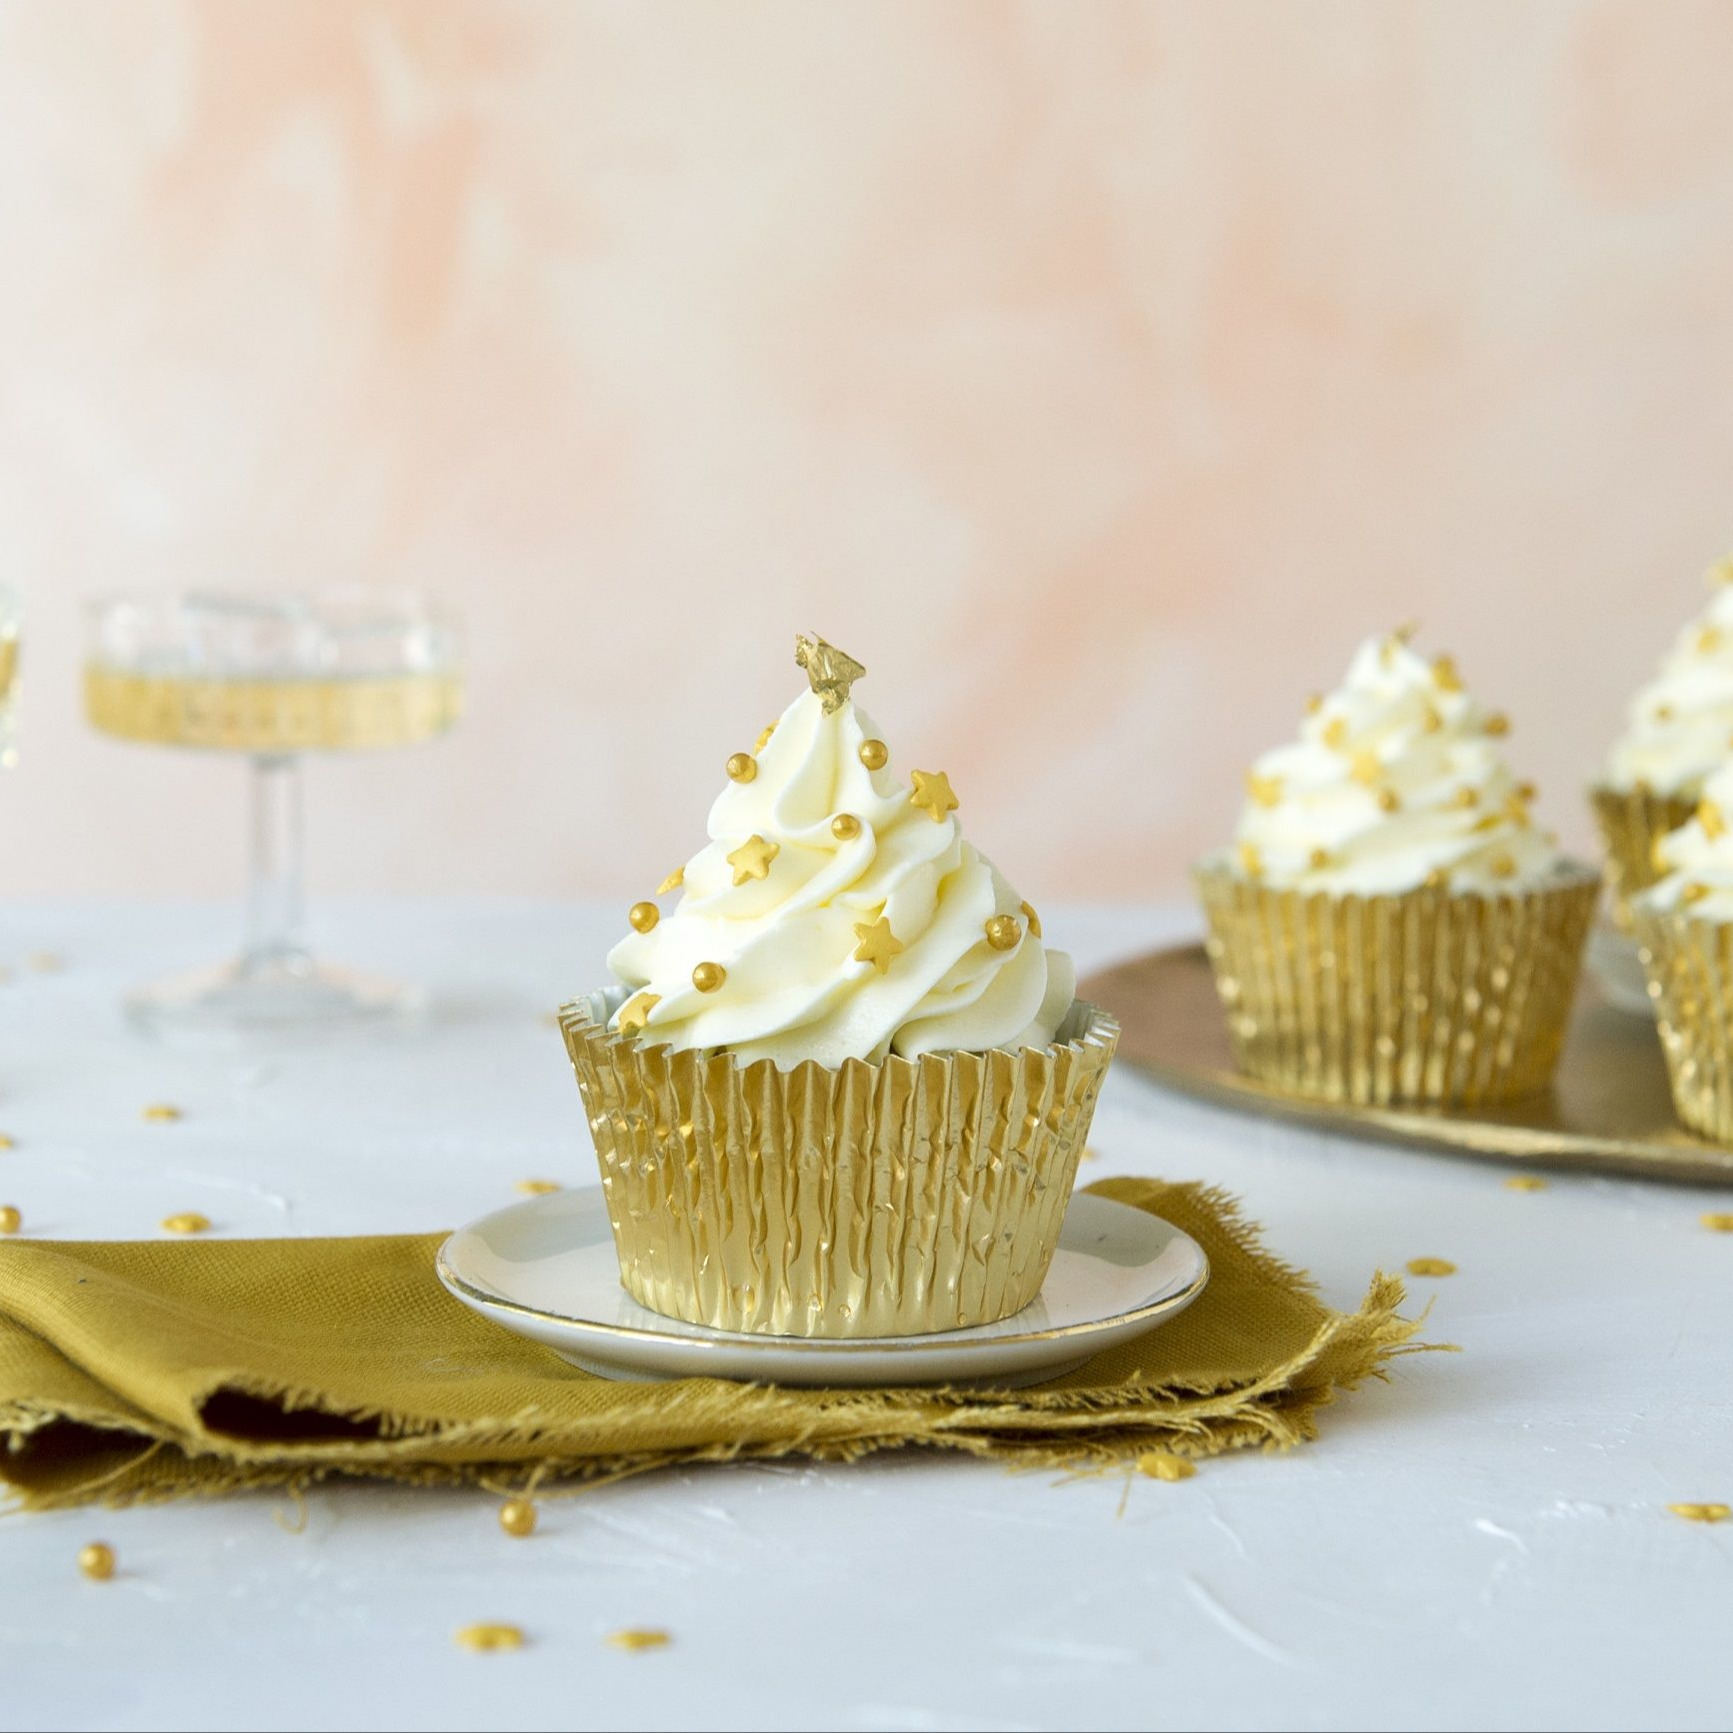 Aanpassing koken Reclame Golden cupcakes | Bakken.nl